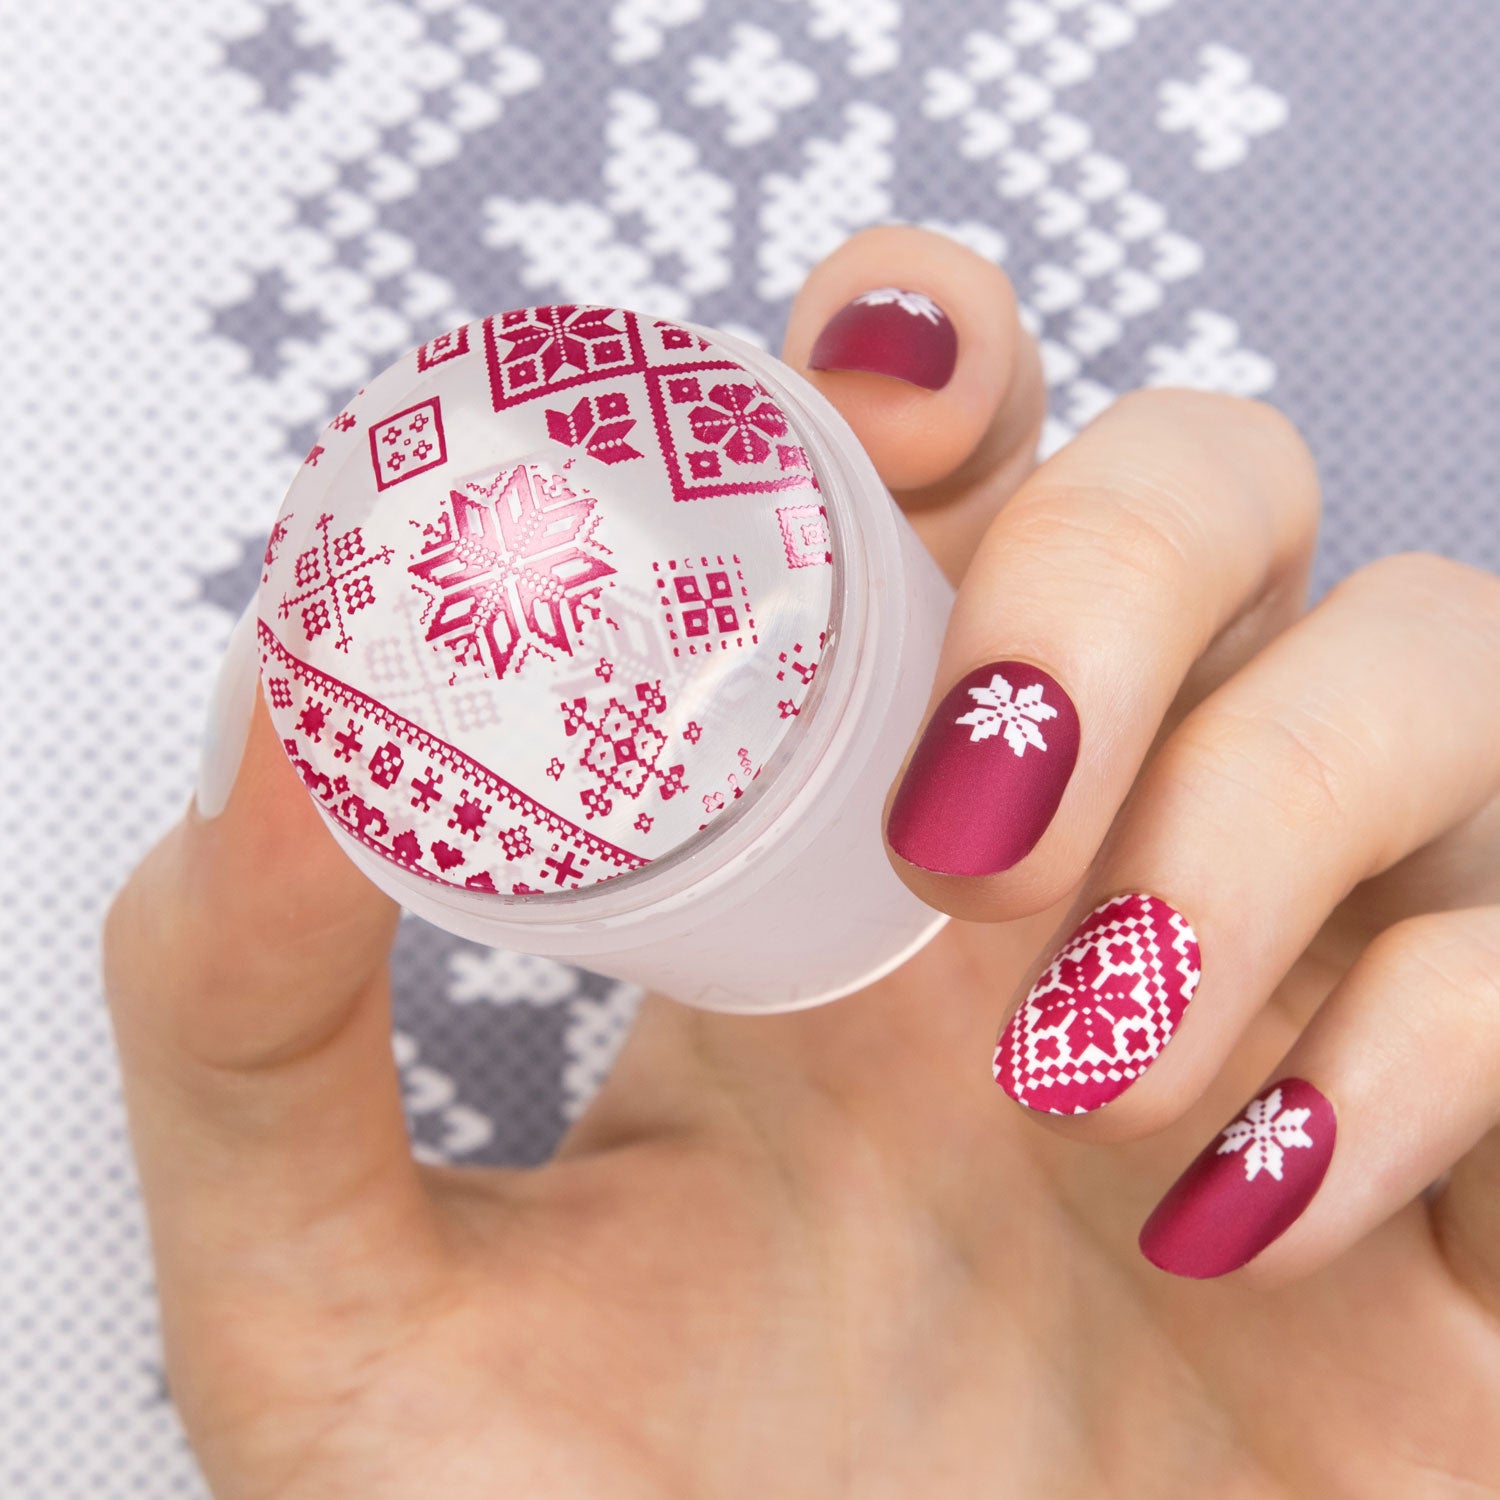 Snowflake nail art tutorial - Nail Lacquer UK